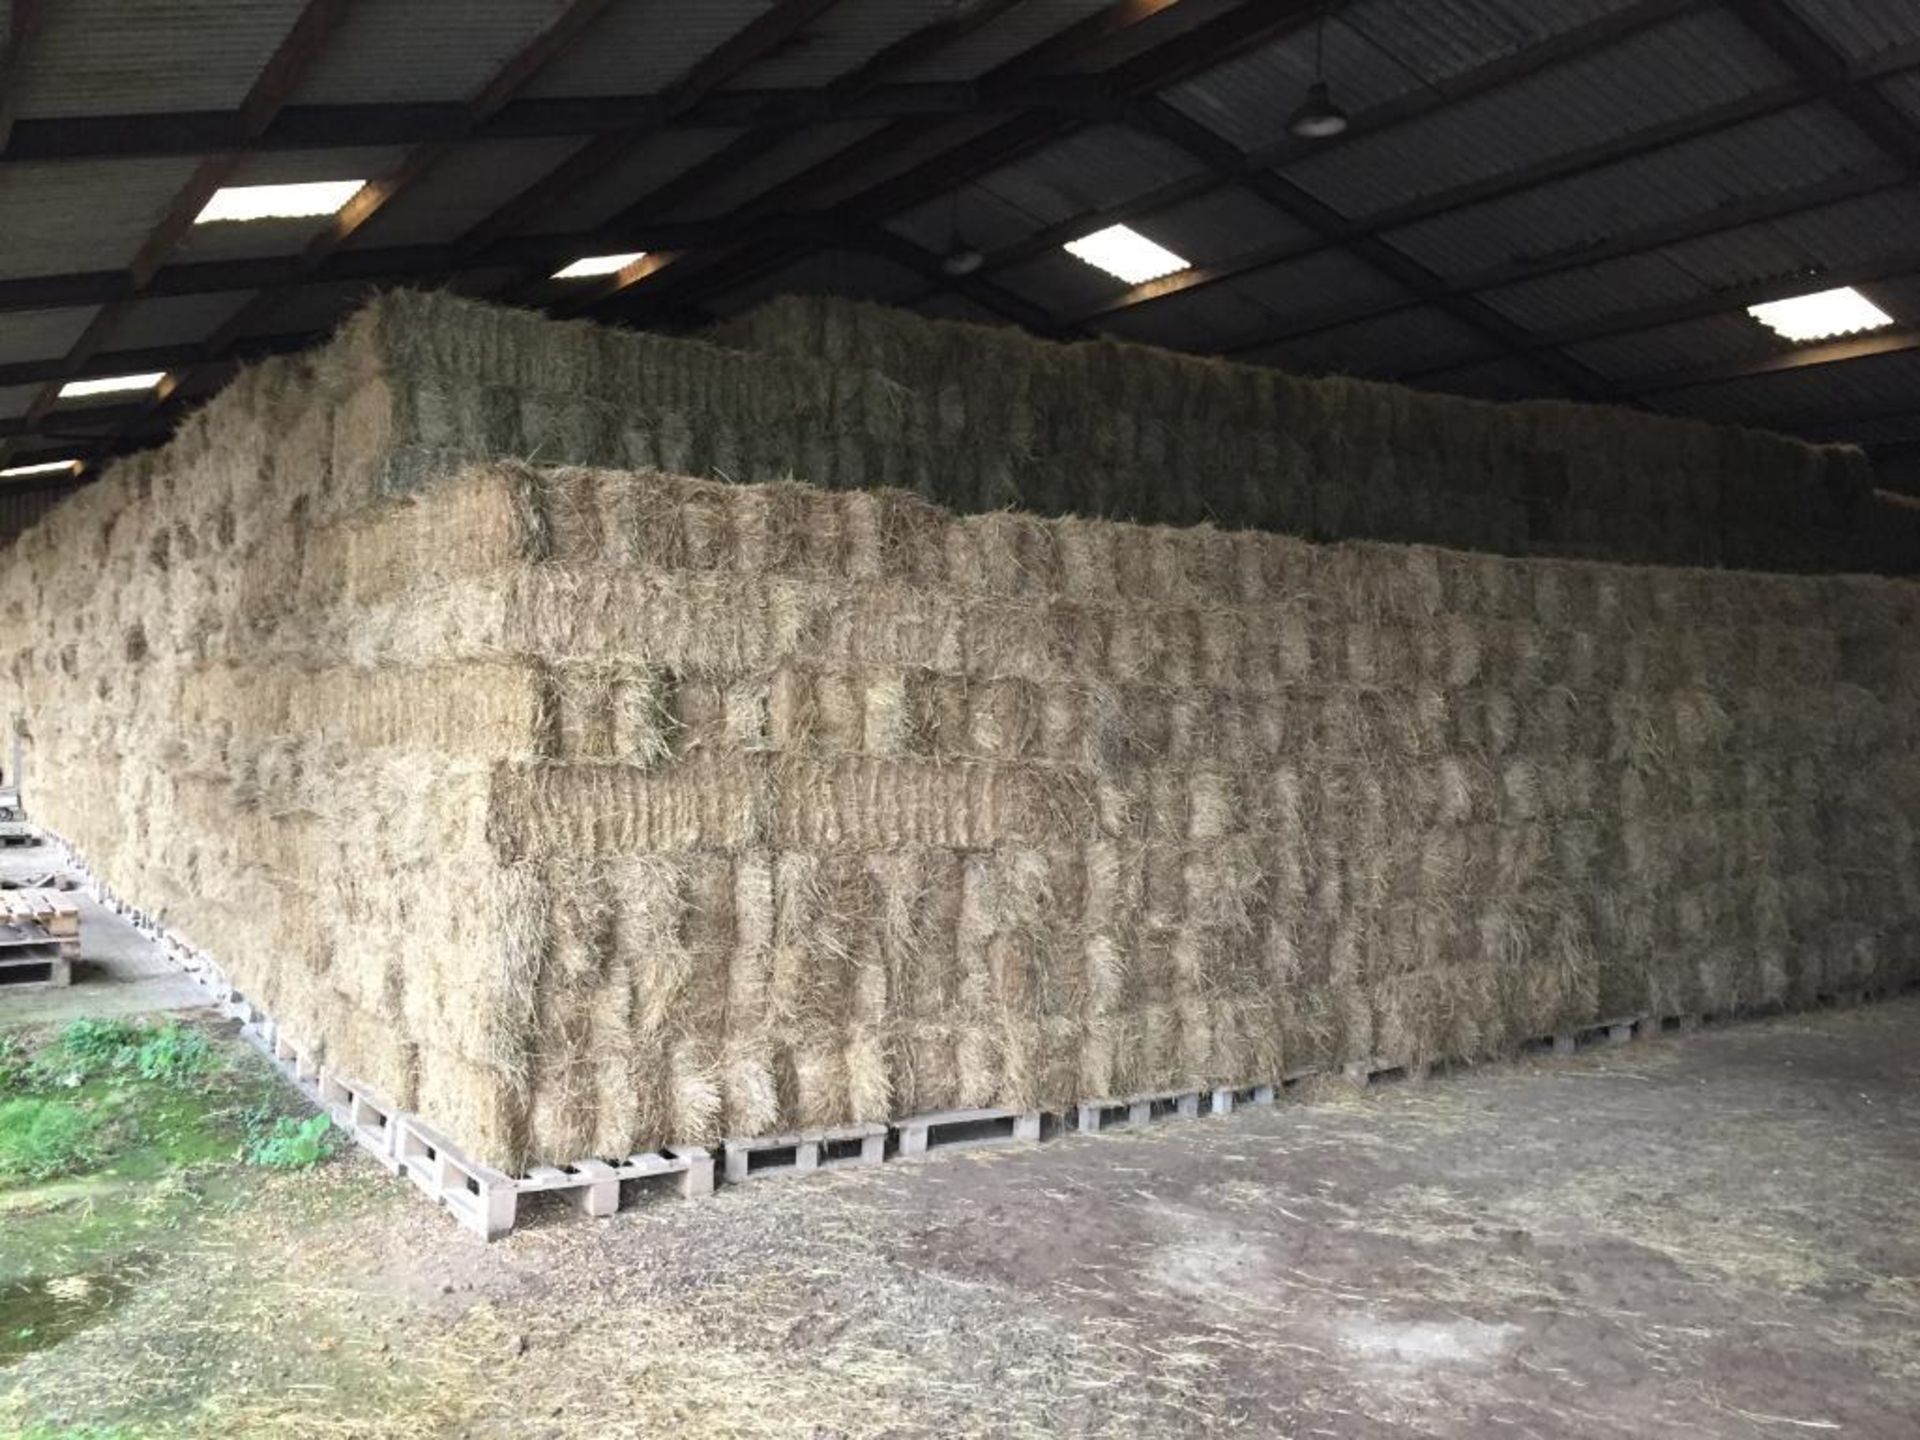 300 Flat 8 Bales only Meadow Hay in a barn. L. Radford Esq., Geaves Farm, PE27 5HG